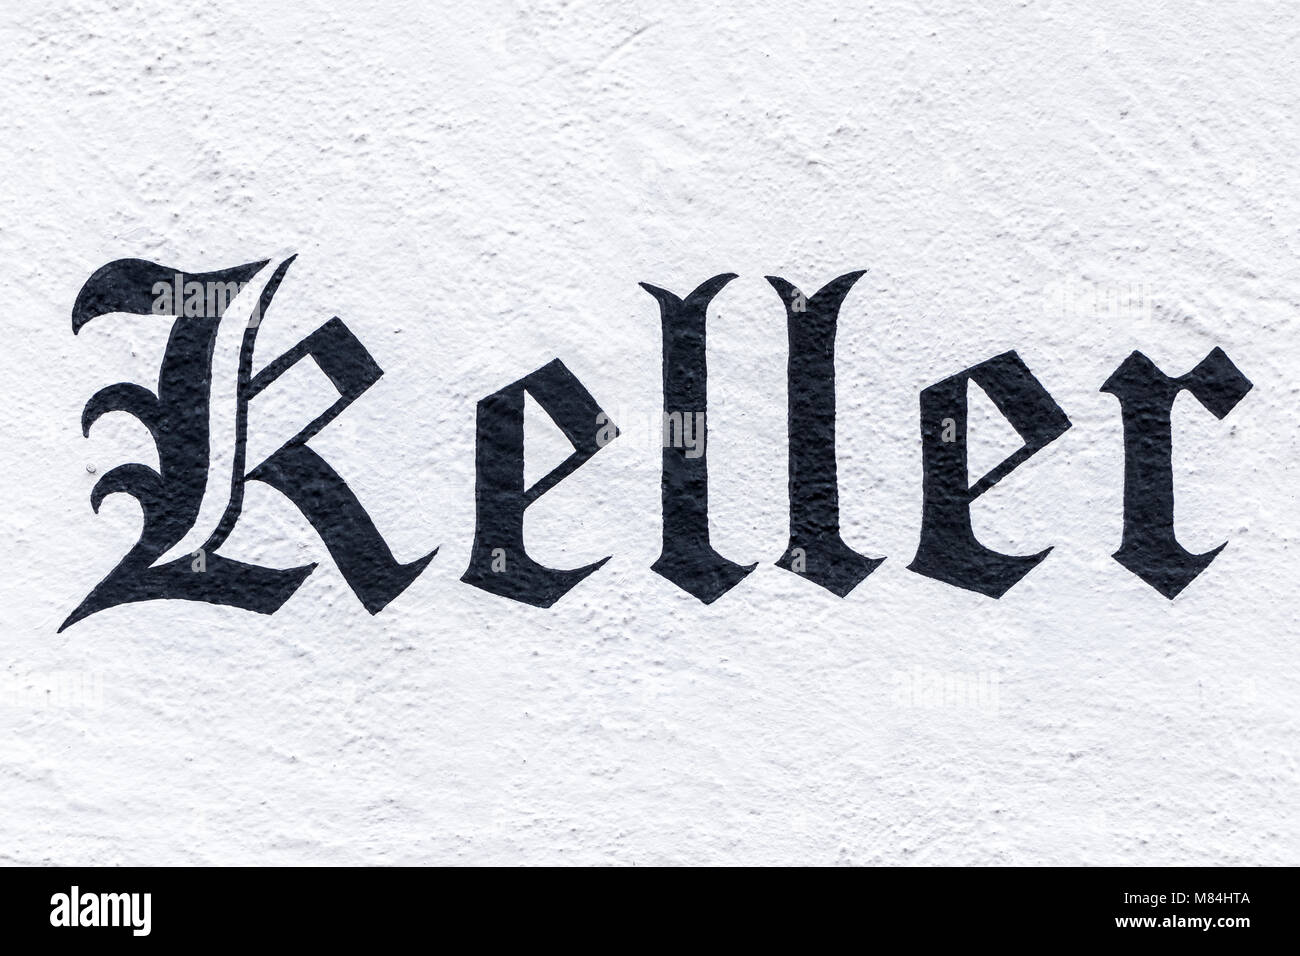 Palabra alemana Keller, Inglés bodega, pintado en fuente Fraktur en una pared Foto de stock